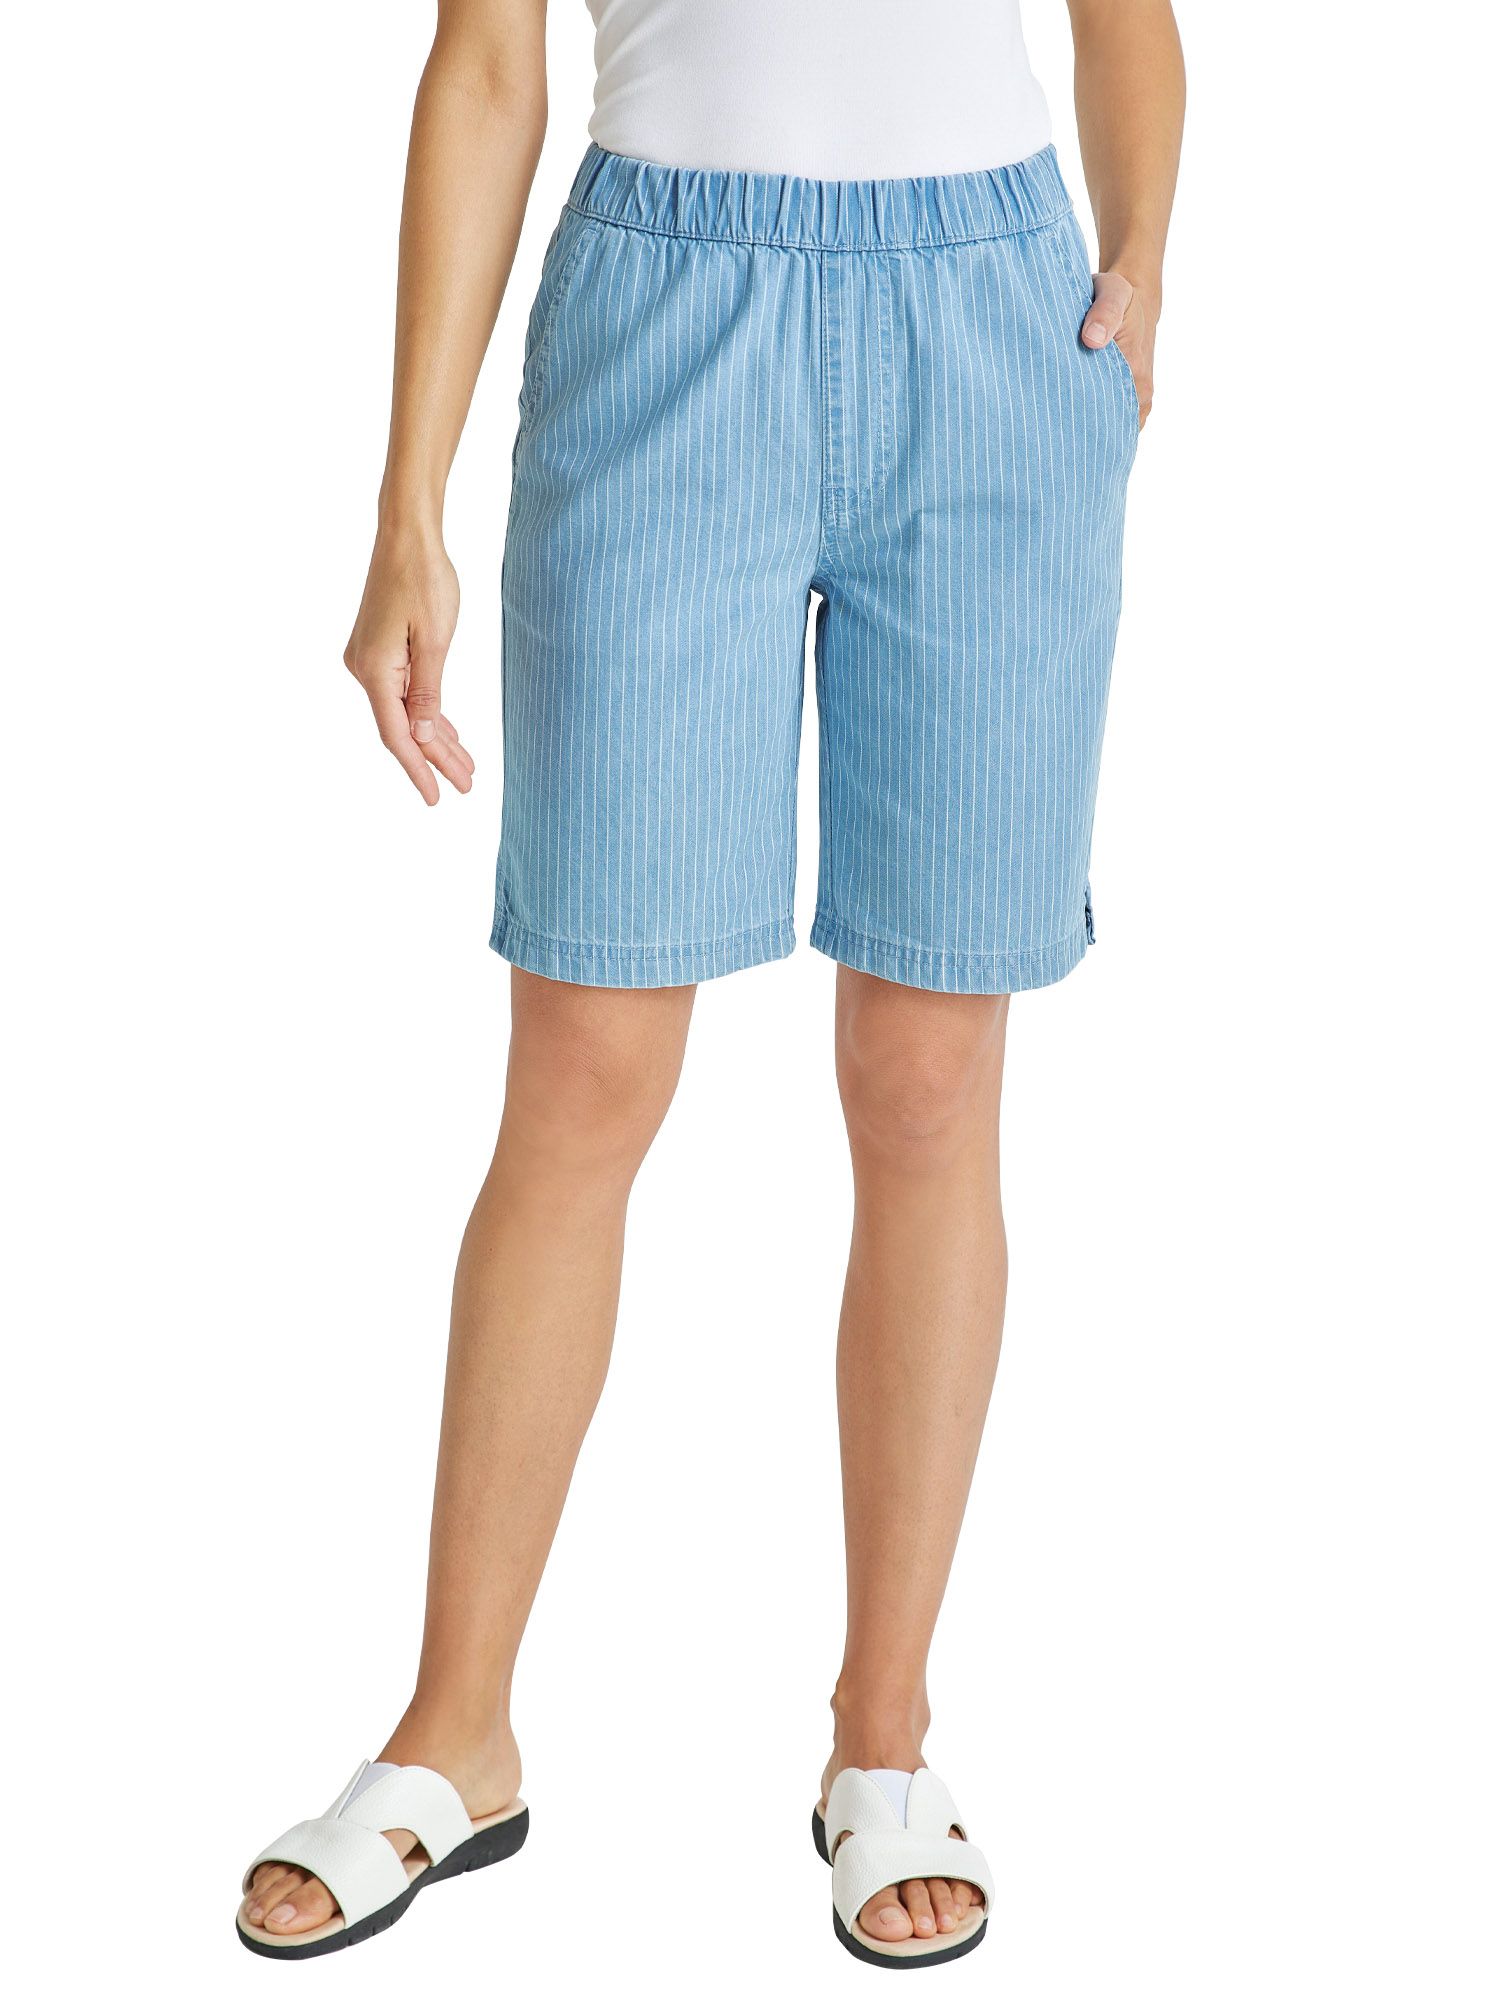 Causeway Bay Ladies Linen Blend Lightweight Elasticated Waist Summer Shorts Size 10 to 18